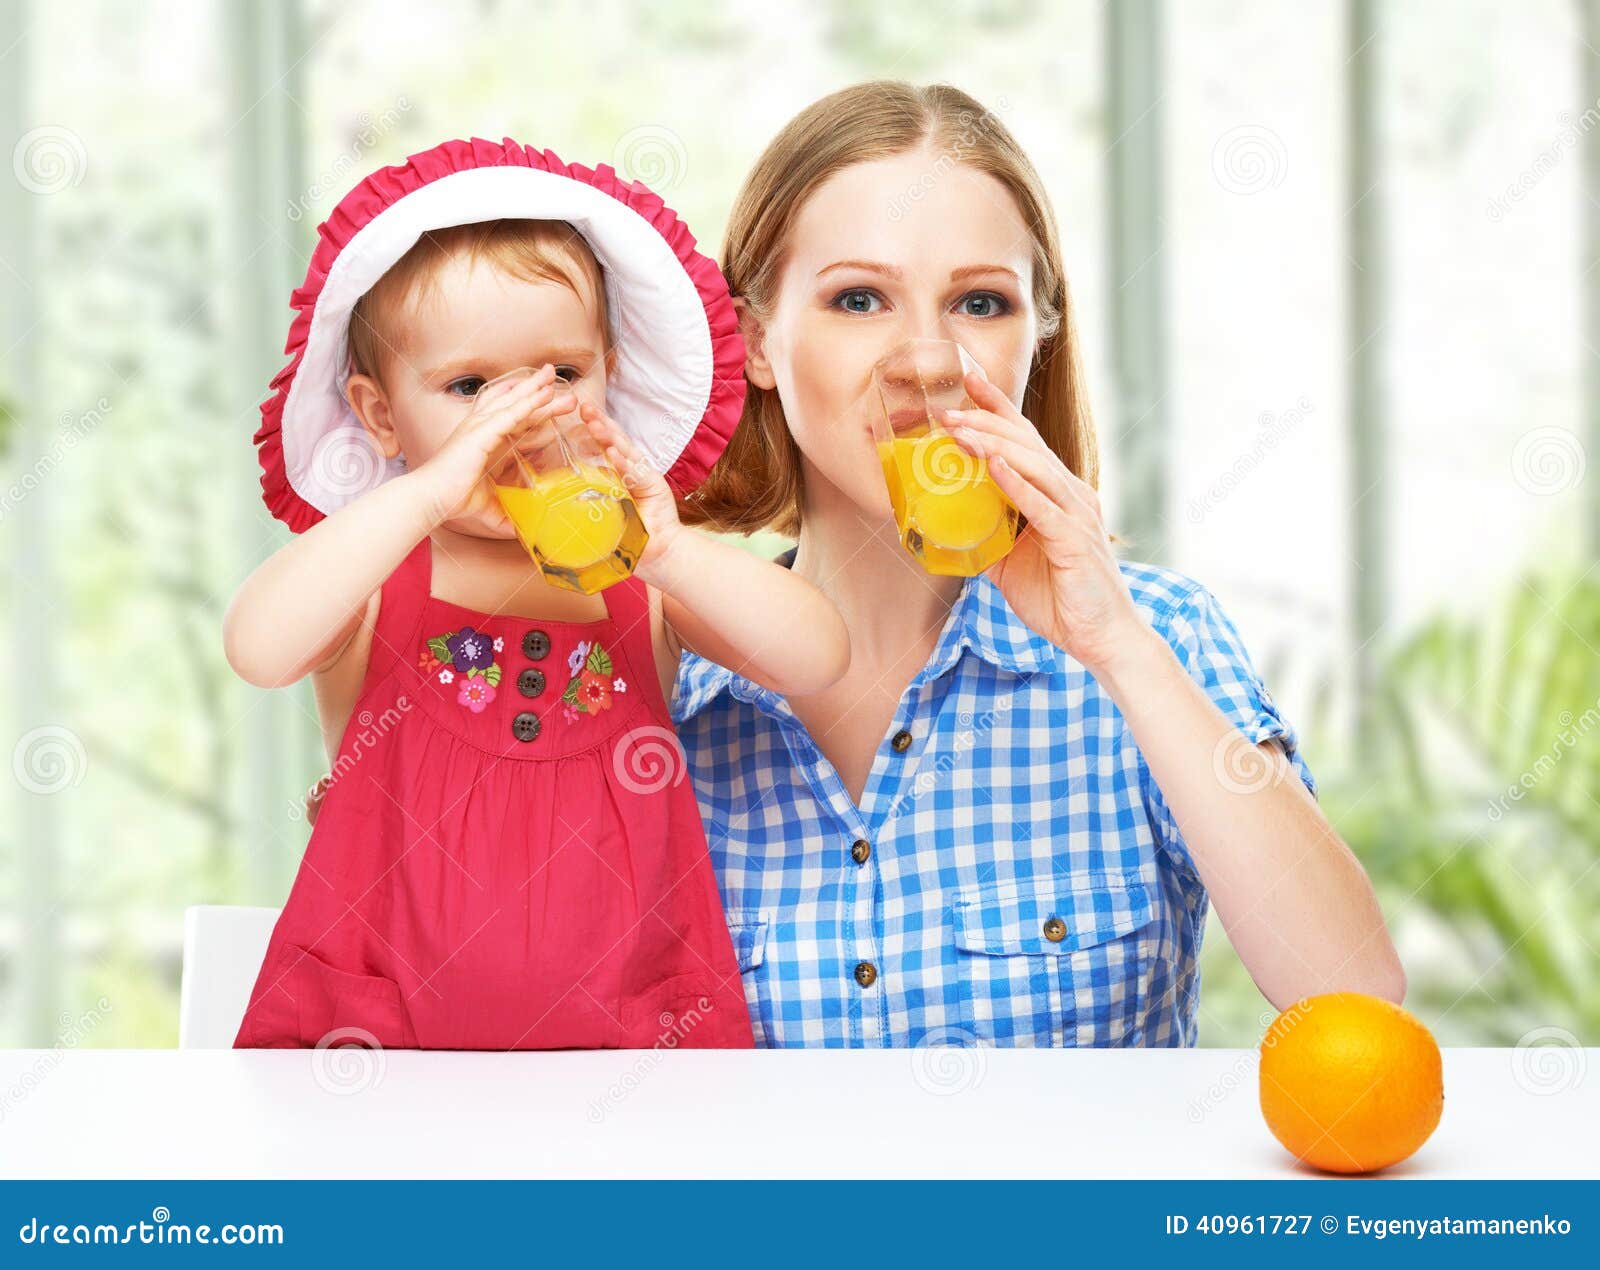 Мама пьет дочку. Фотосессия семьи с апельсиновым соком. Сок семья. Мама с дочкой пьют. Апельсин для детей.